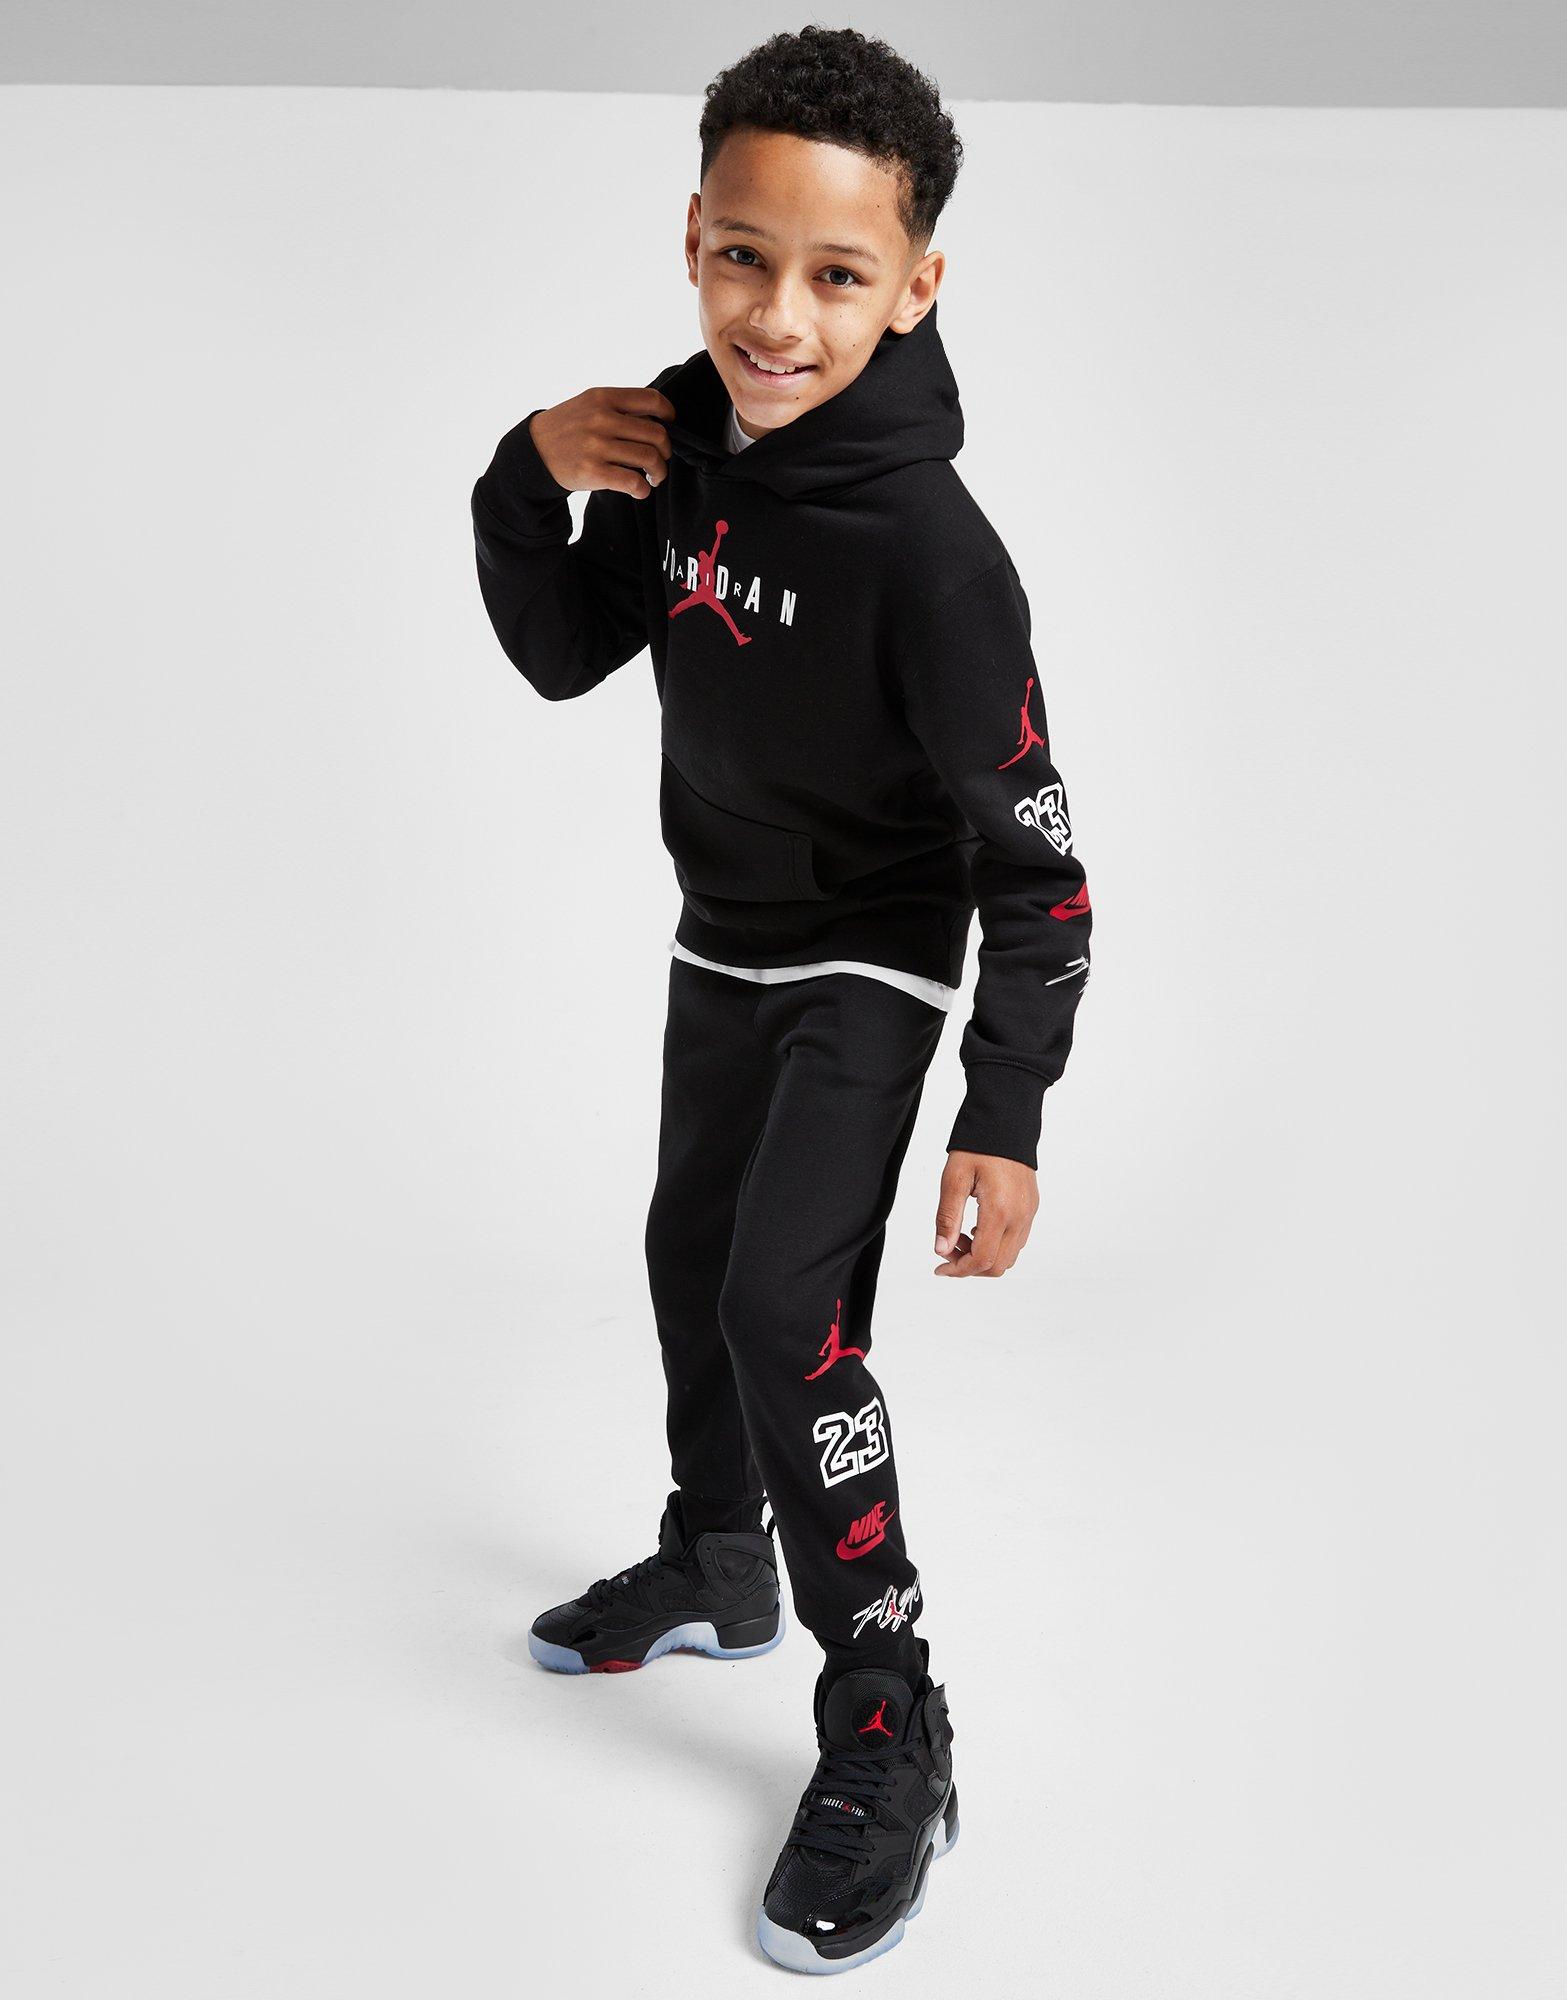 Zonder hoofd circulatie pakket Zwart Jordan Graphic Logo Hoodie Junior - JD Sports Nederland